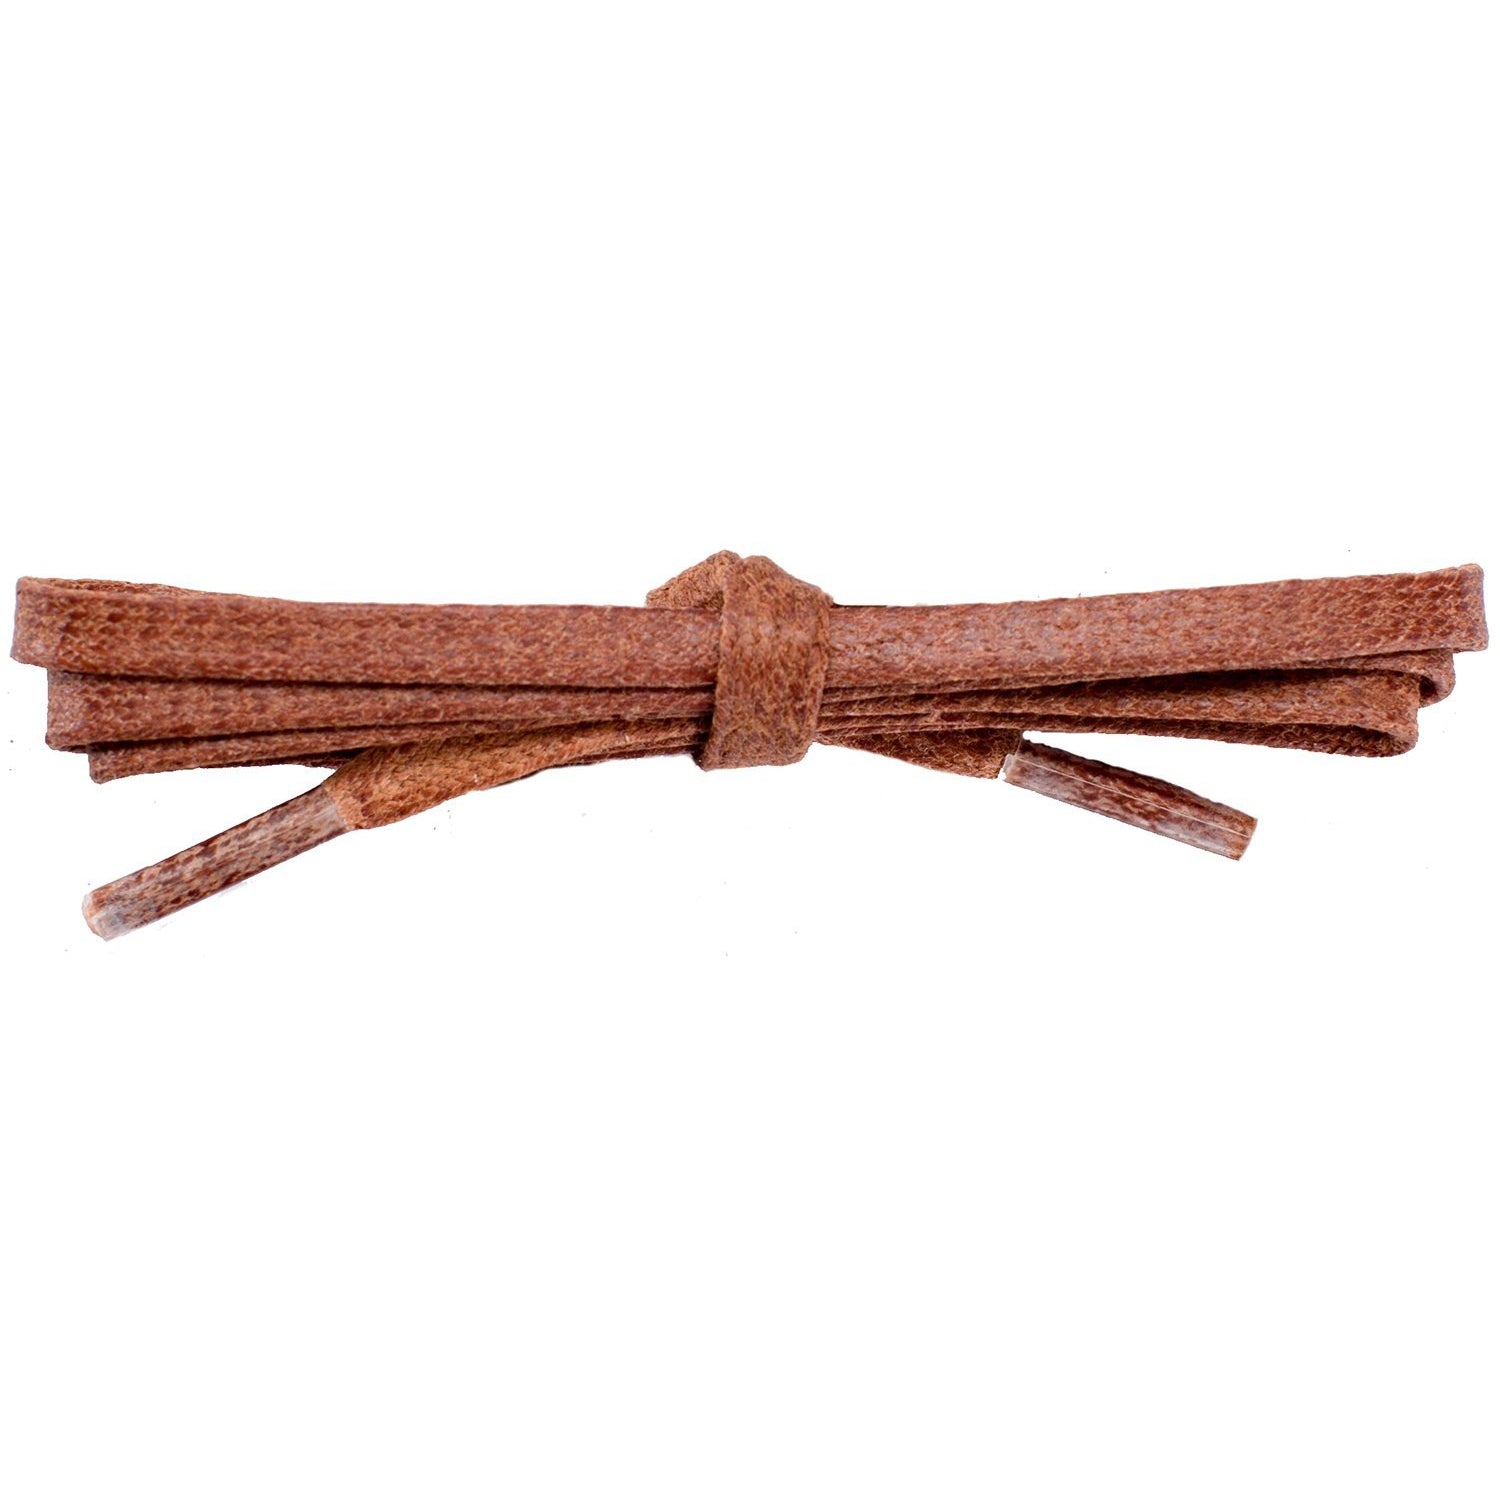 Wholesale Waxed Cotton Flat DRESS Laces 1/4'' - Cognac (12 Pair Pack) Shoelaces